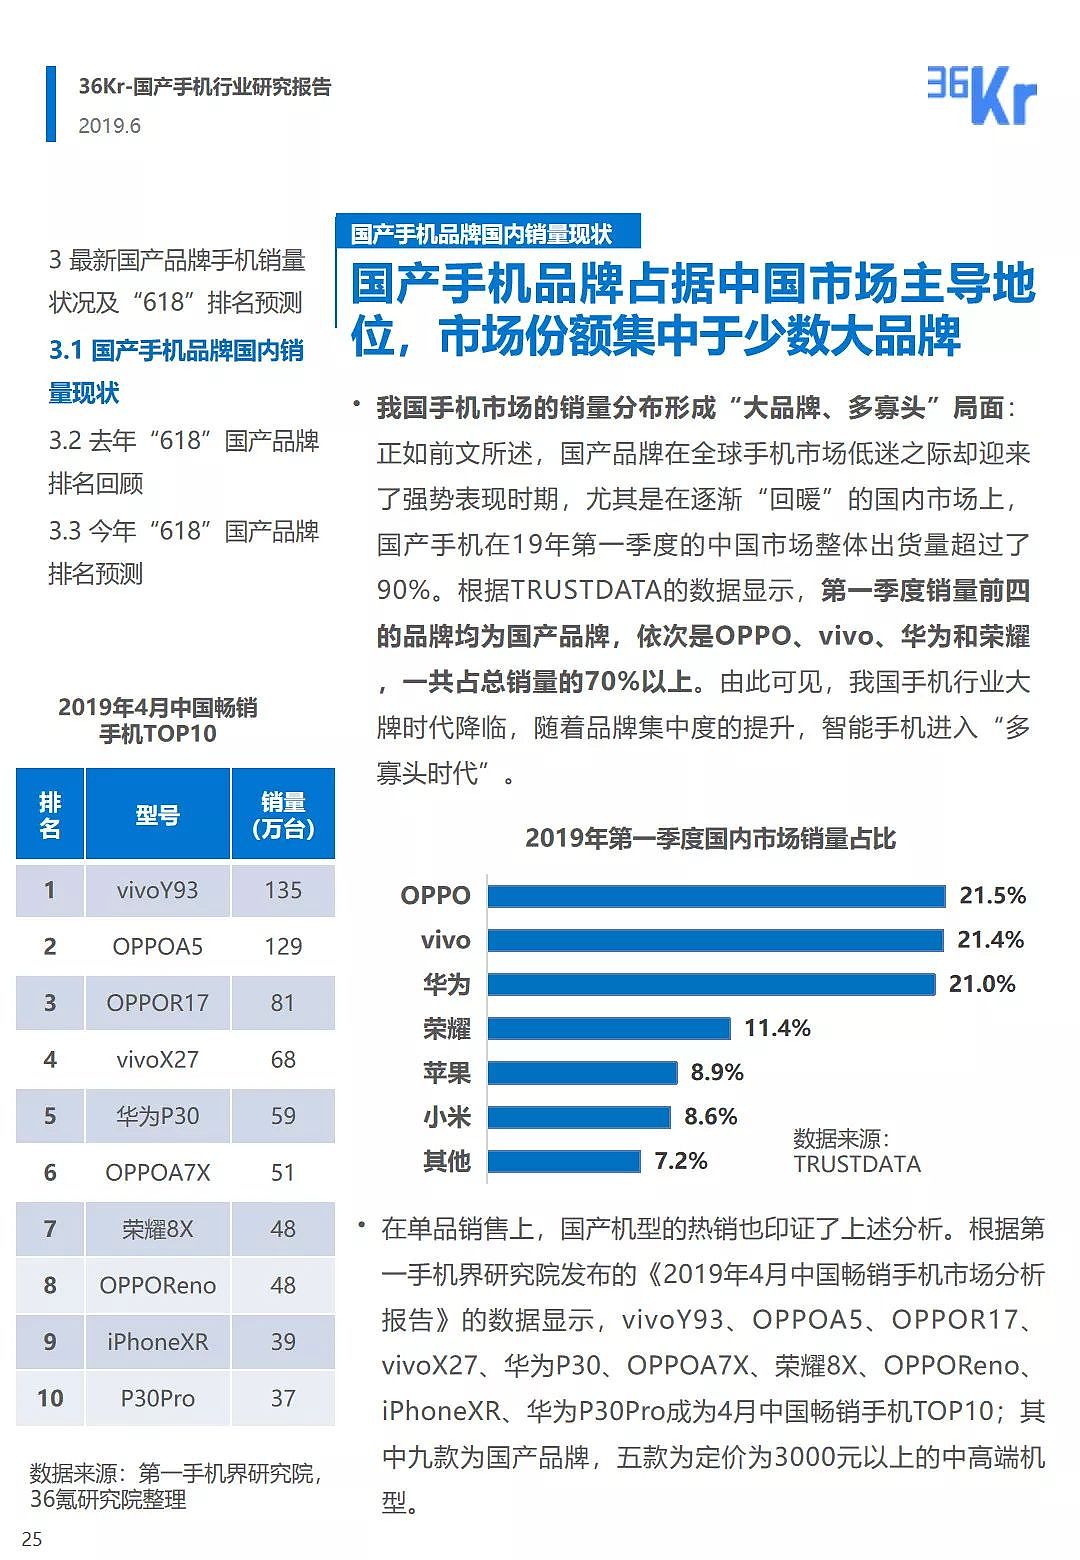 中国手机品牌市场营销研究报告 | 36氪研究 - 26